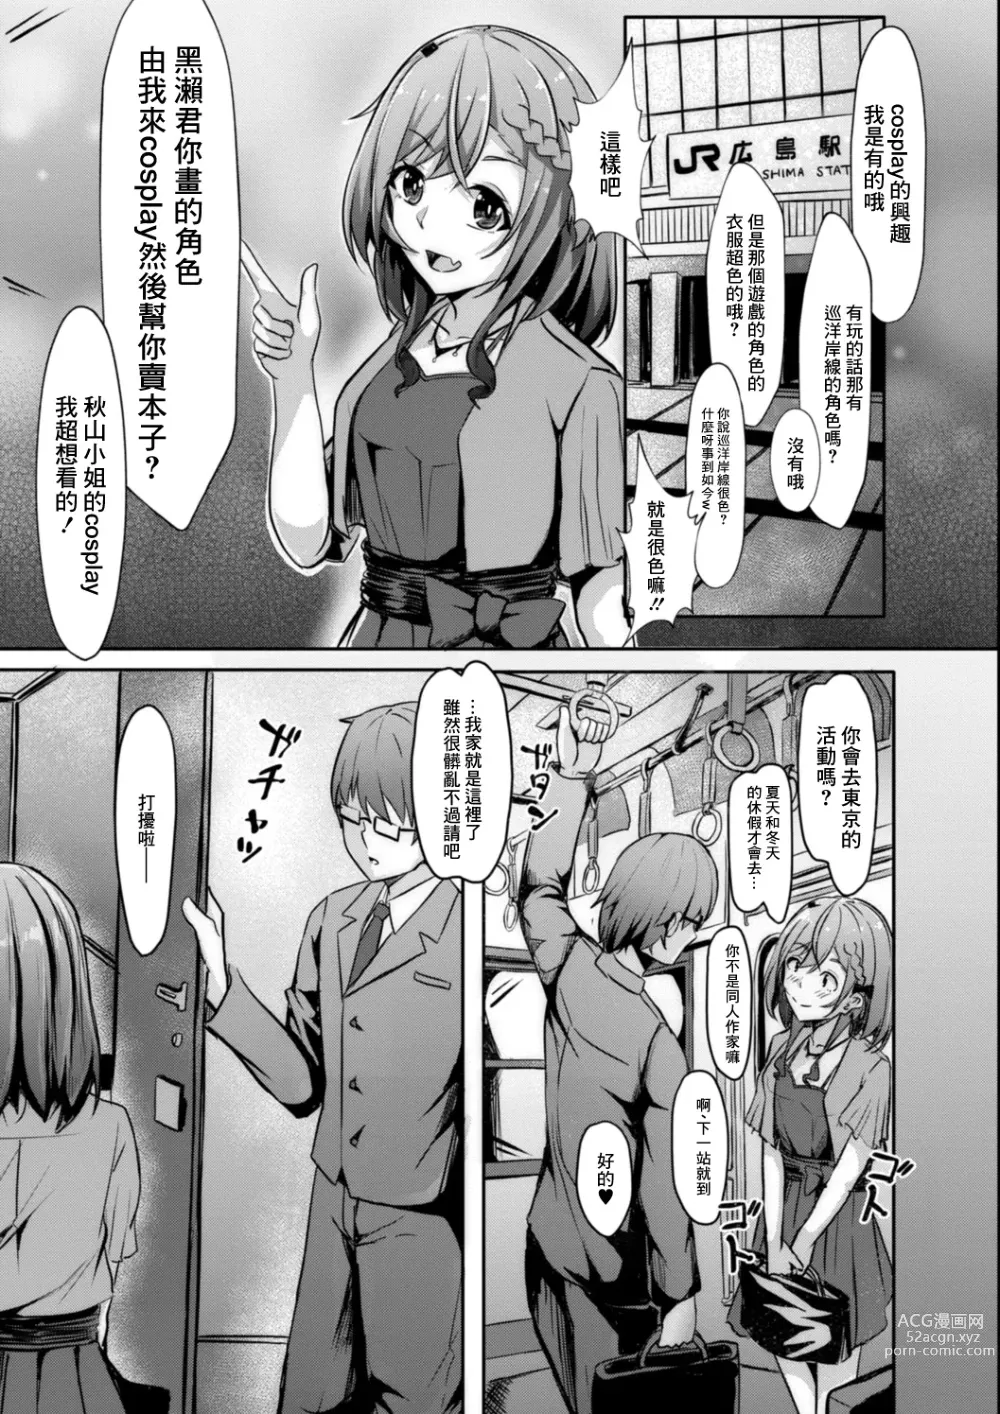 Page 7 of manga Anokoro no Idol wa Otaku de deshita